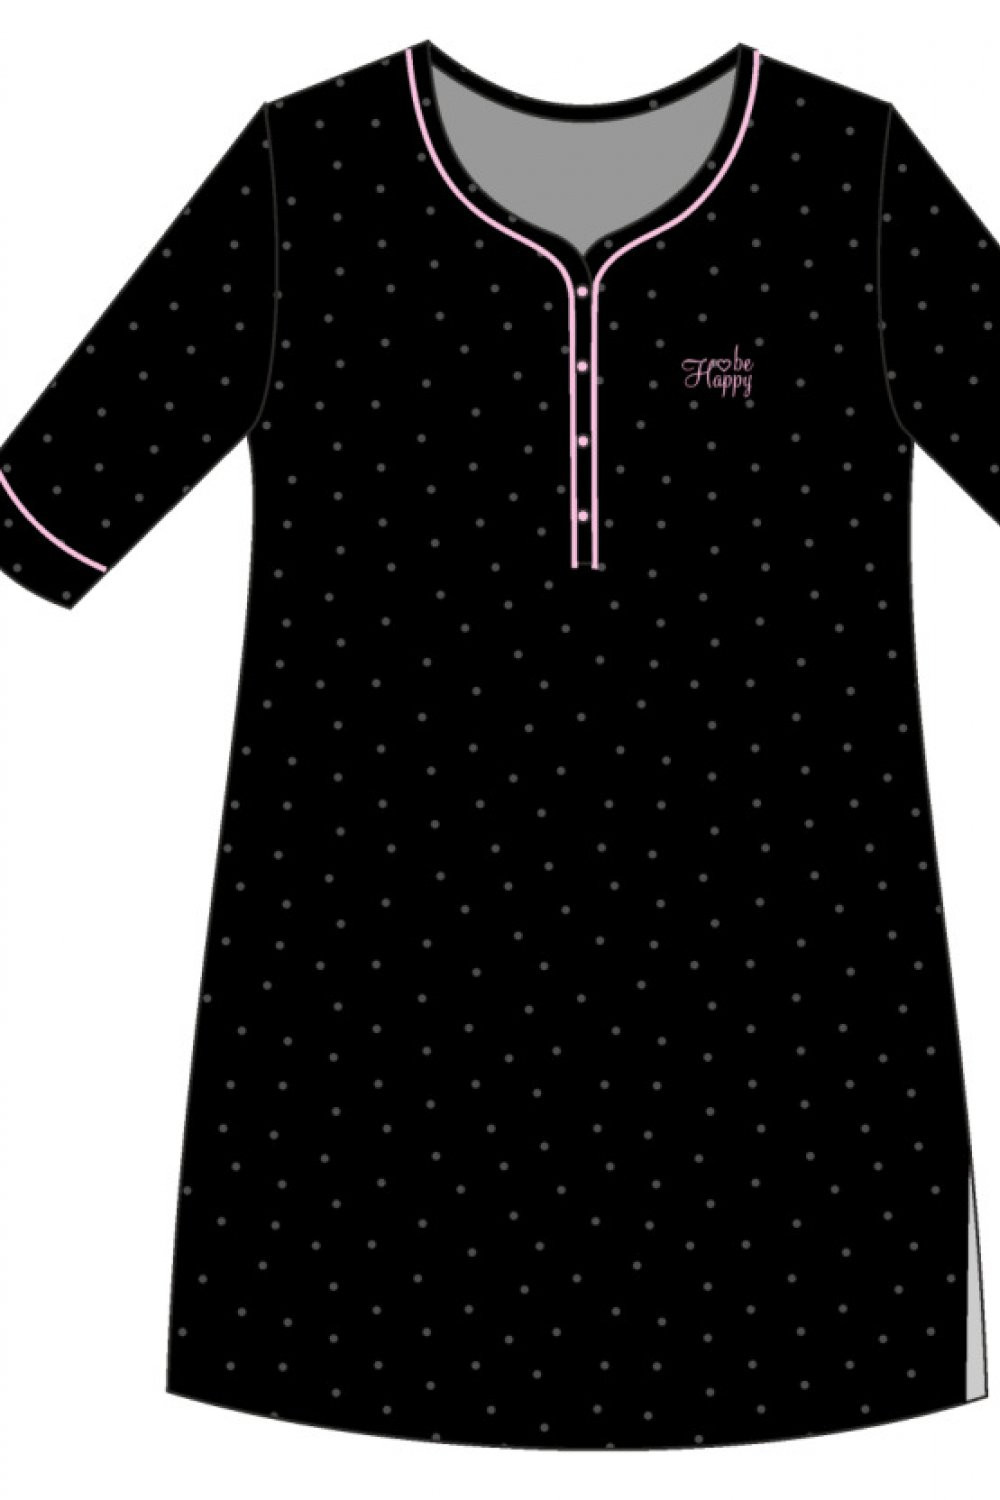 Noční košile Be 2 černá S model 16192795 - Cornette